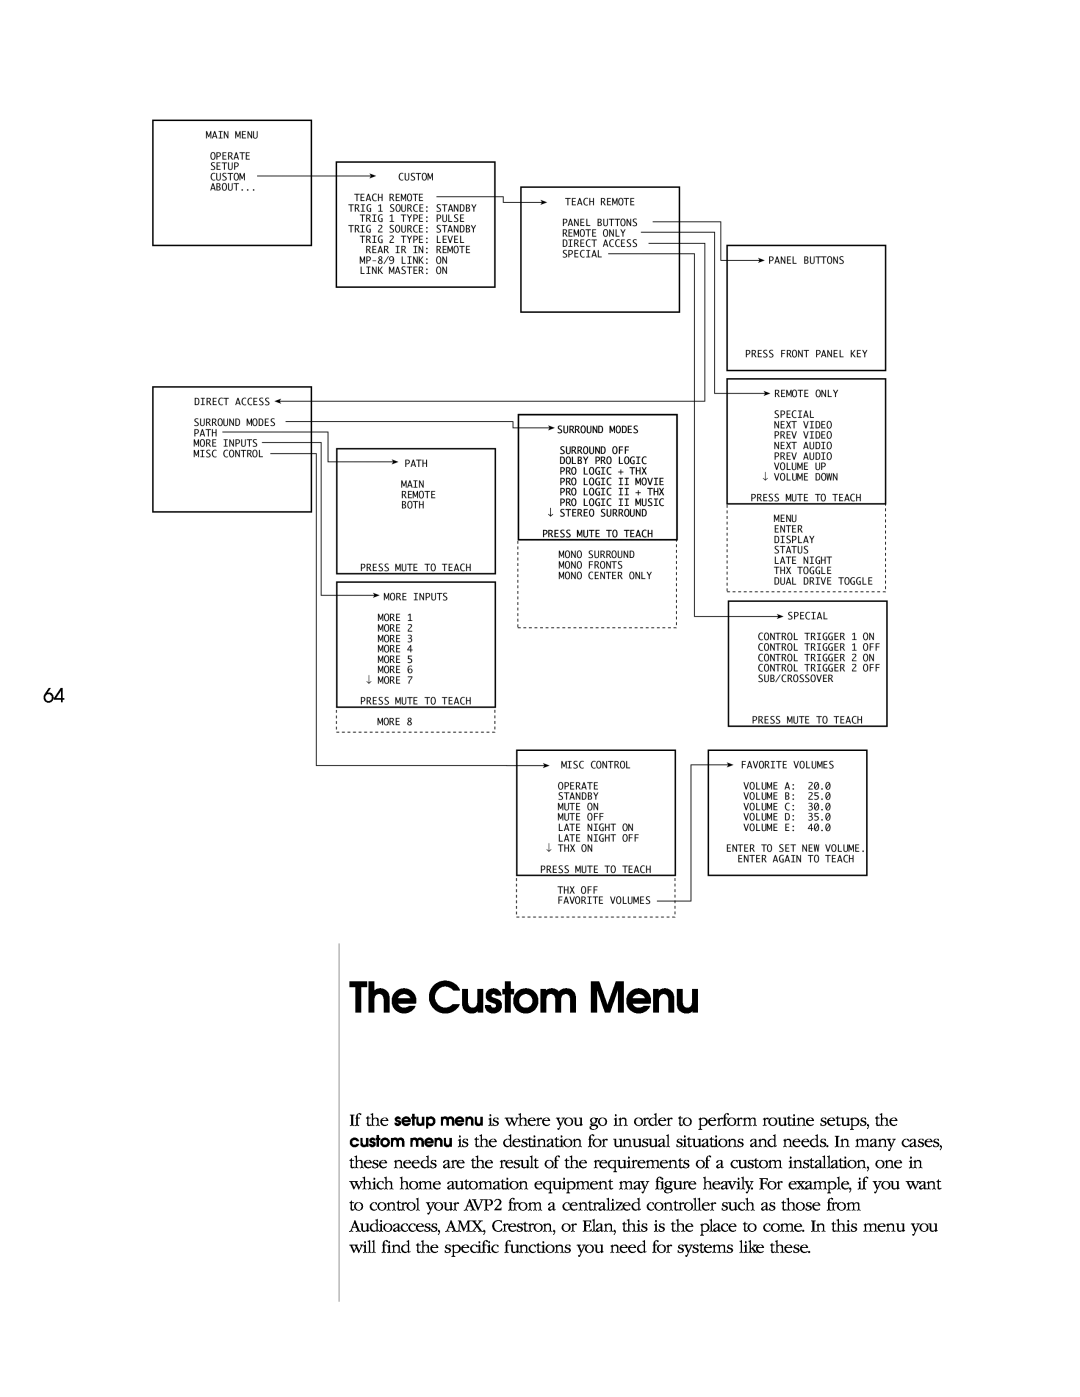 Madrigal Imaging AVP2 owner manual The Custom Menu 